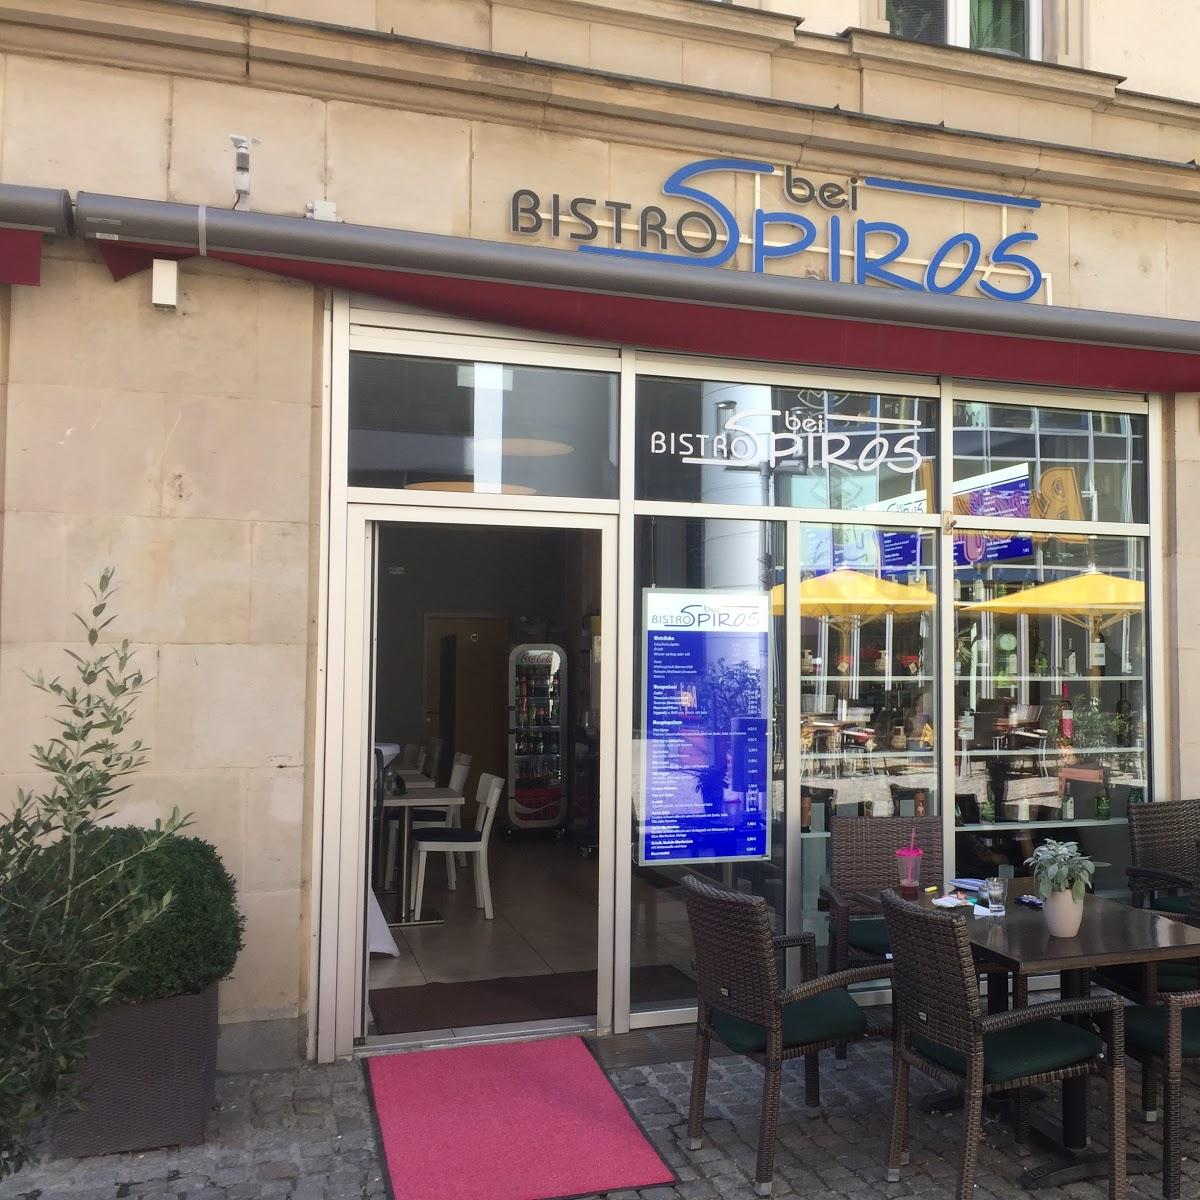 Restaurant "Bistro bei Spiros" in Chemnitz